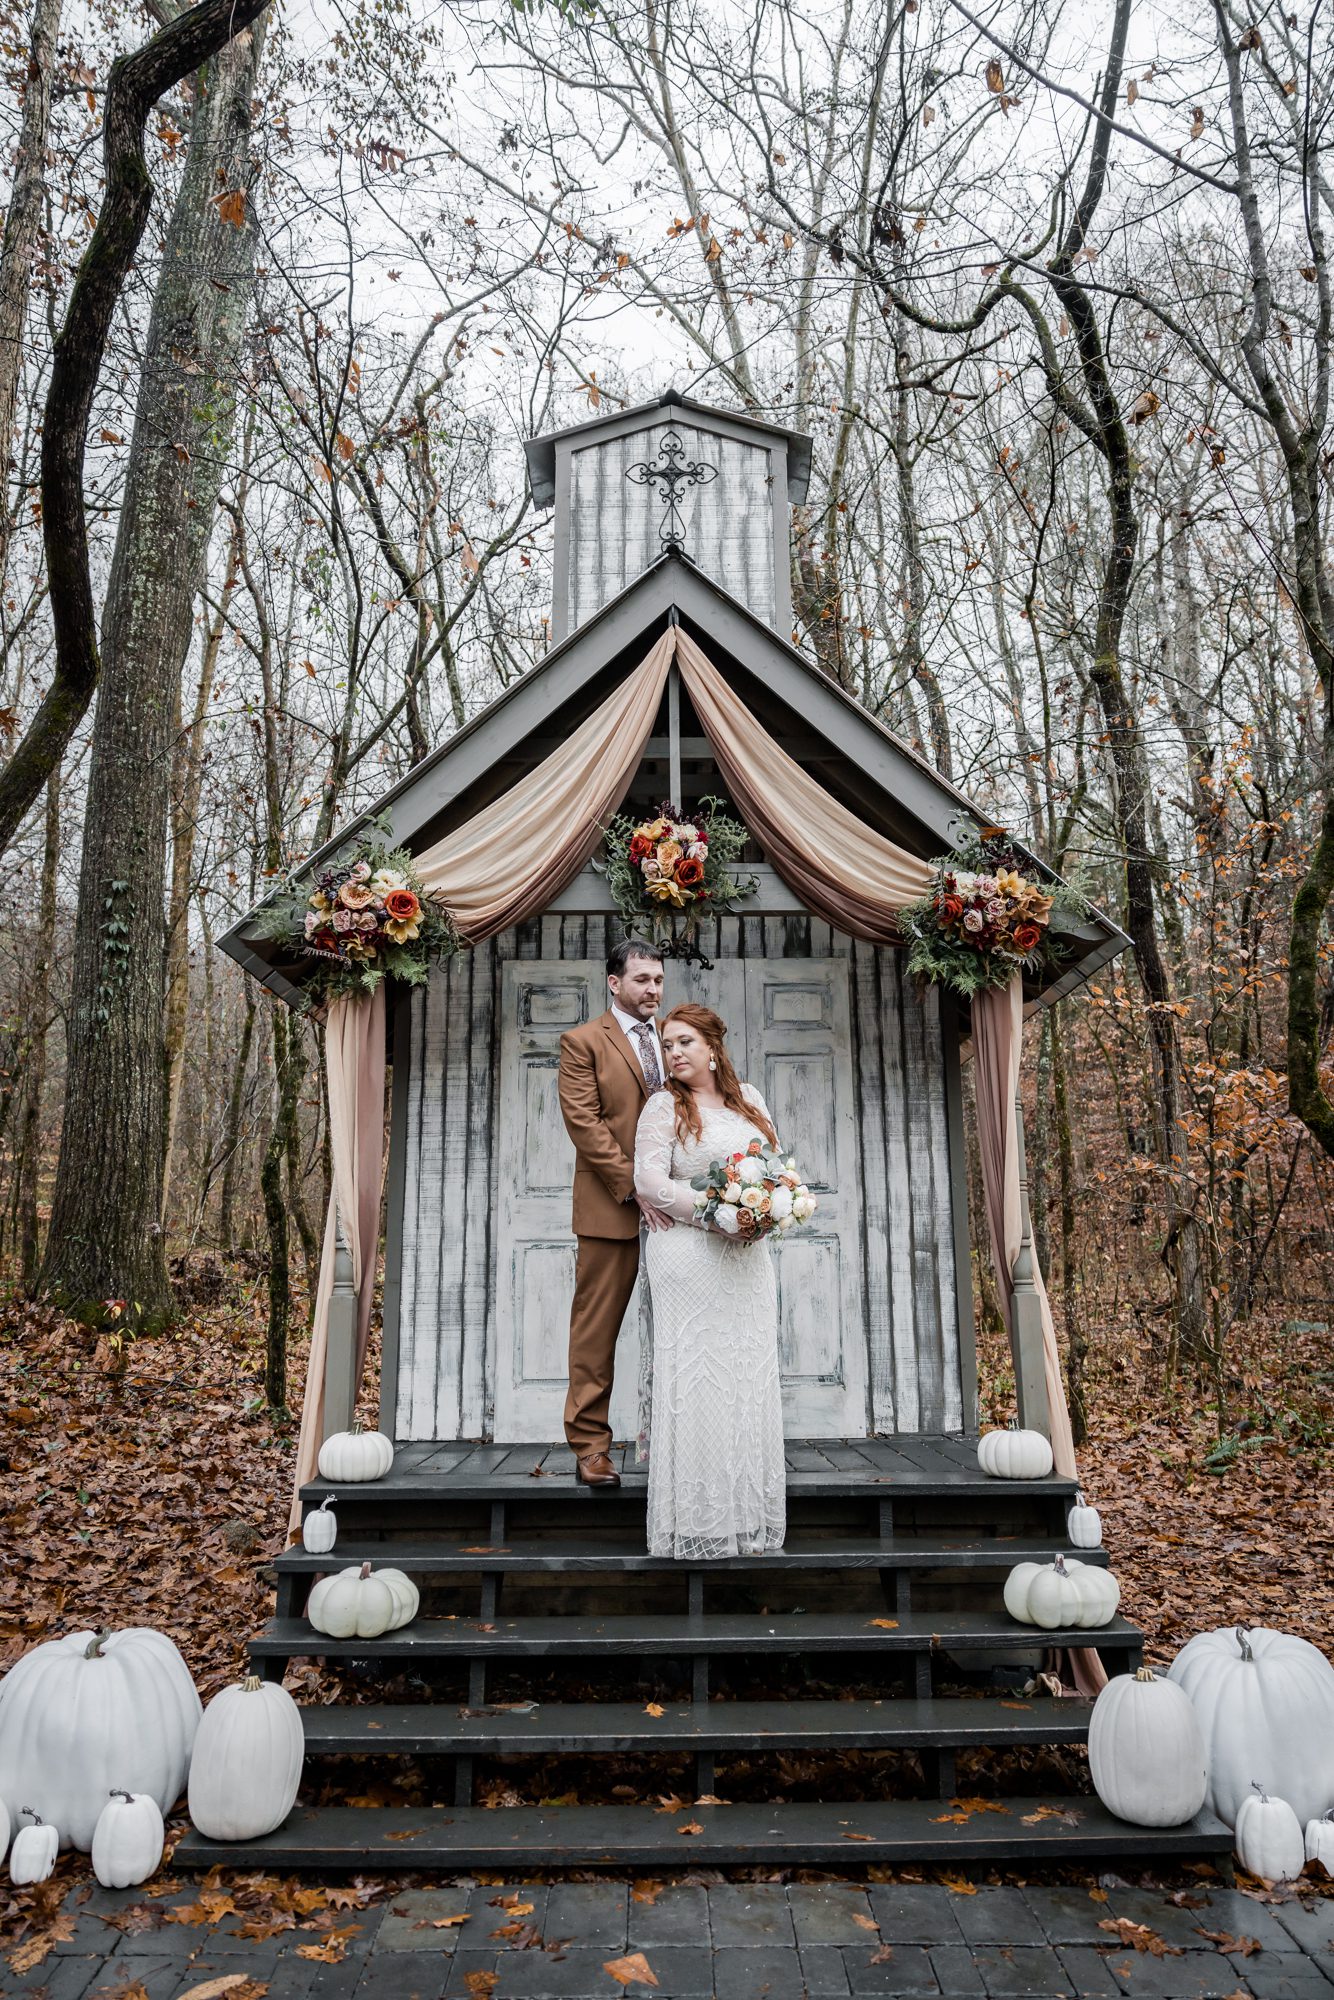 Outdoor bride and groom portrait